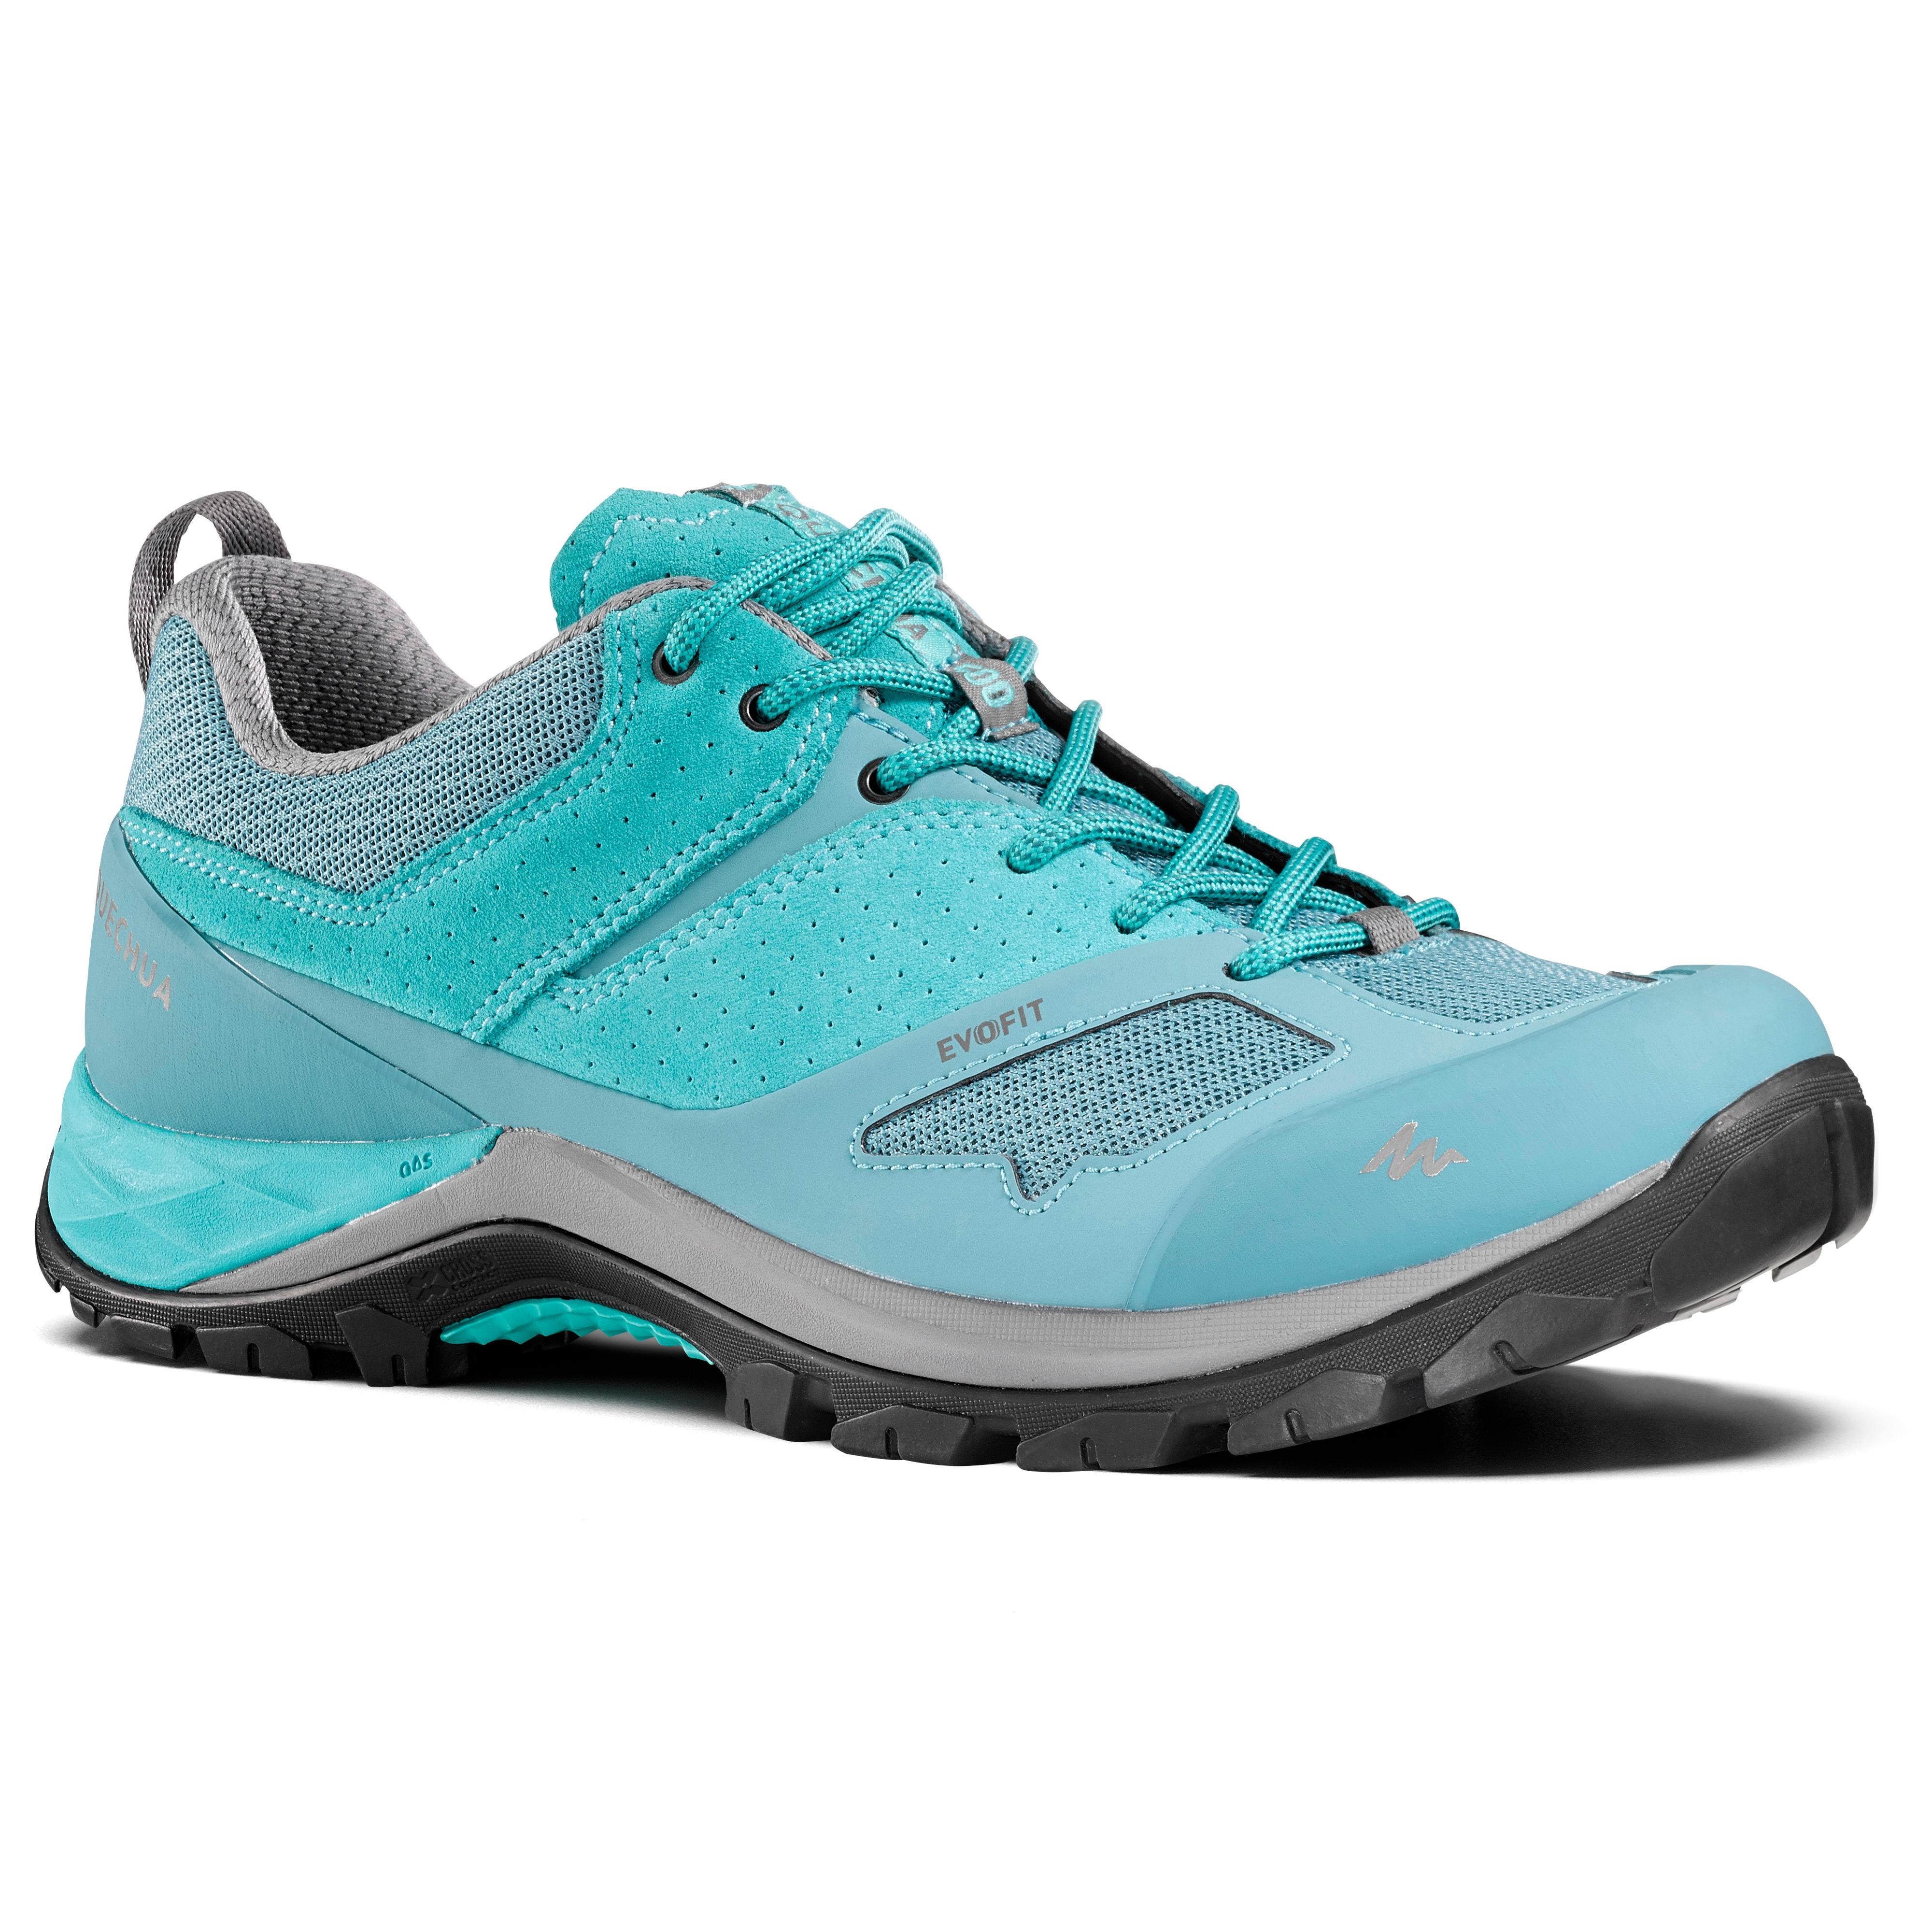 Women's mountain walking shoes MH500 